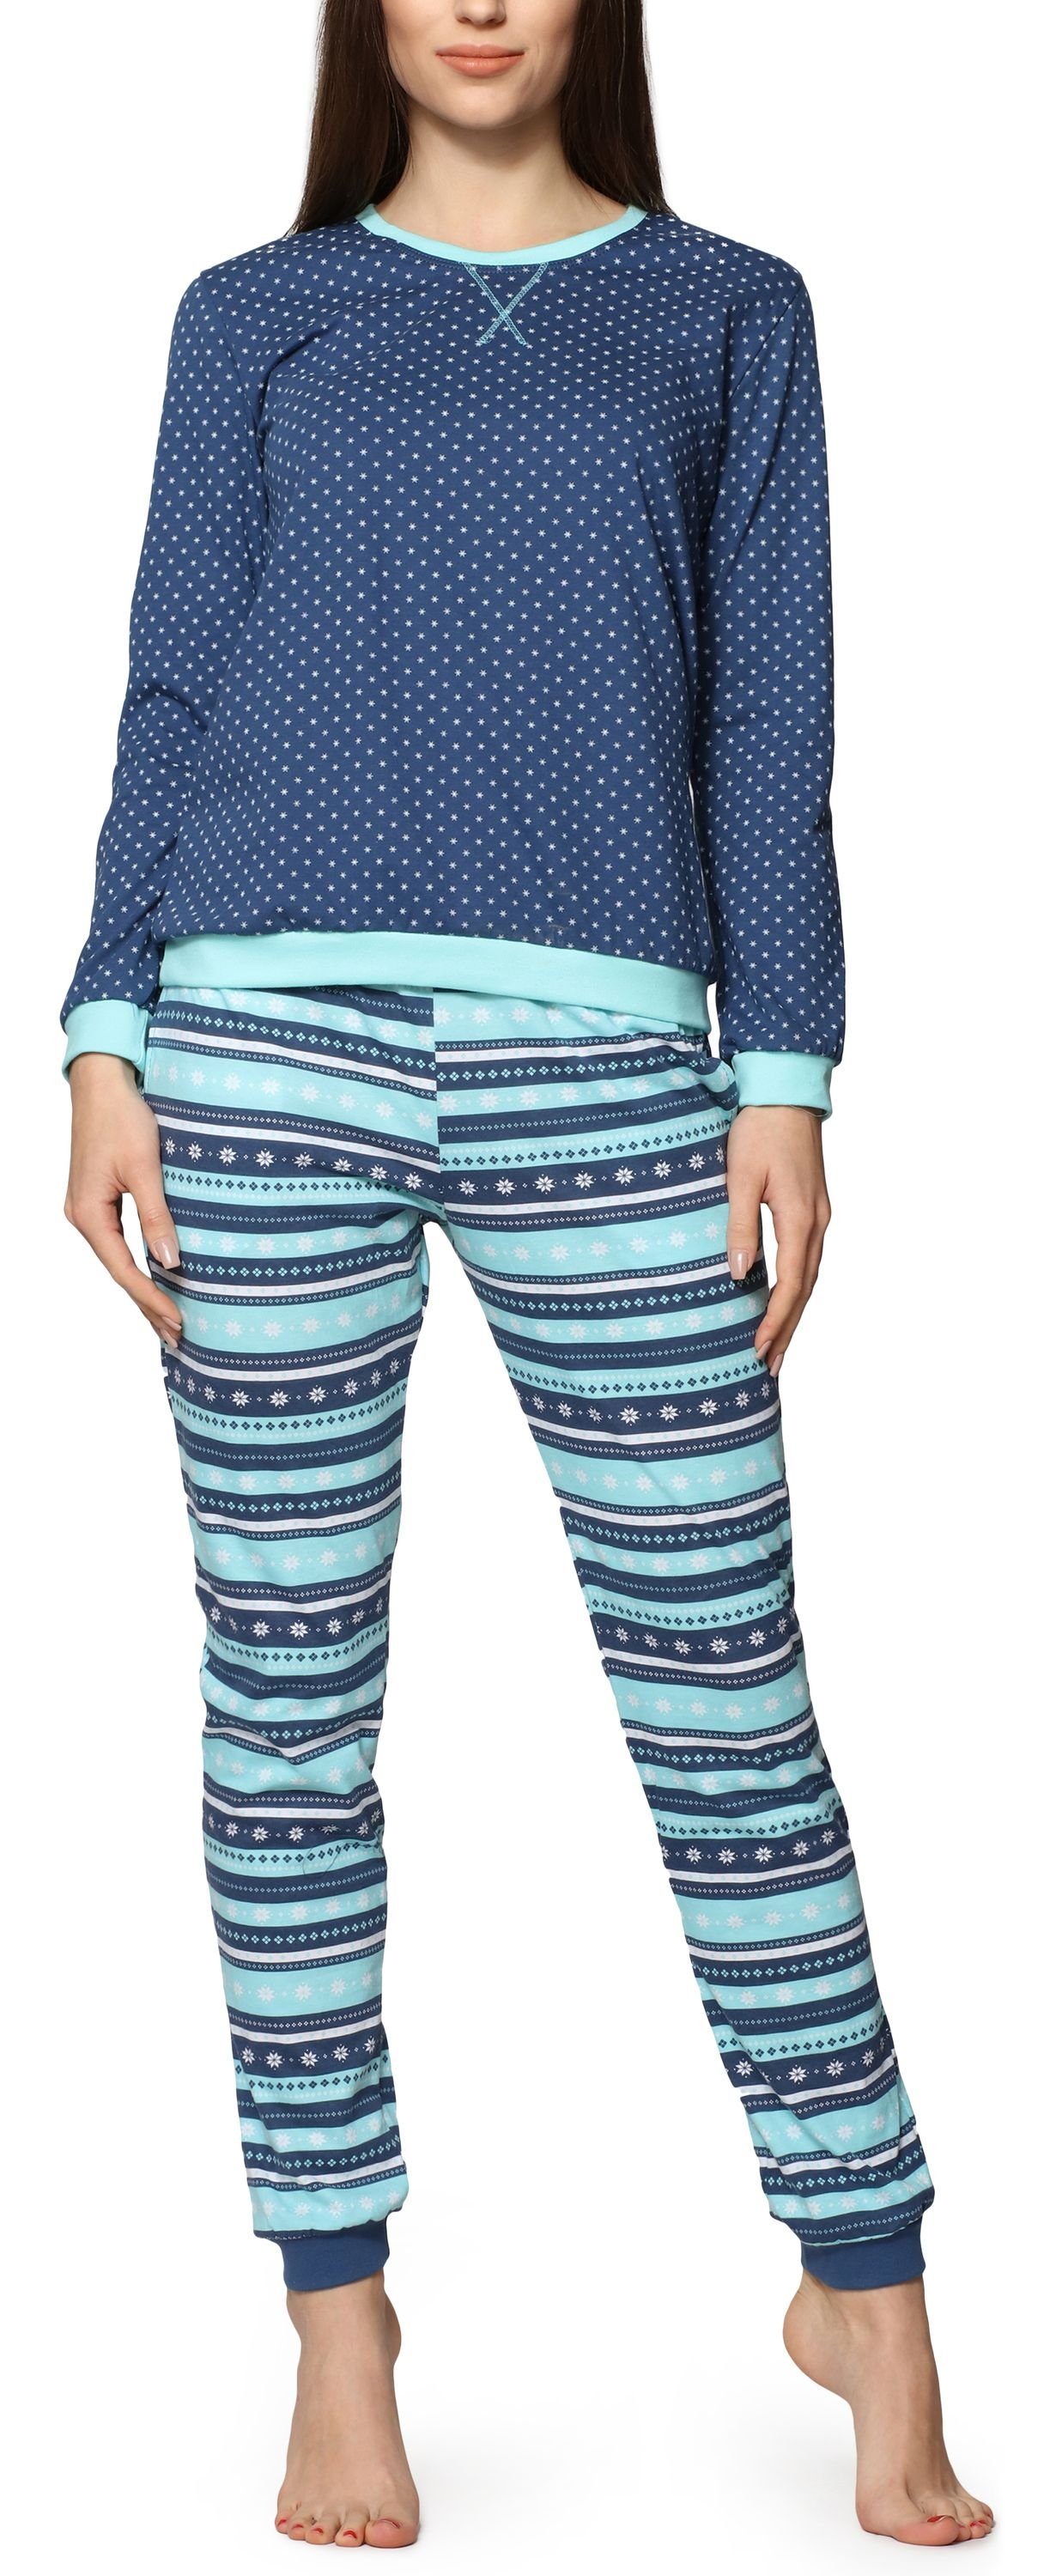 Cornette Schlafanzug Damen Schlafanzug Zweiteiler Pyjama Langarm mit Rundhals Baumwolle 634 Jeans/Türkis